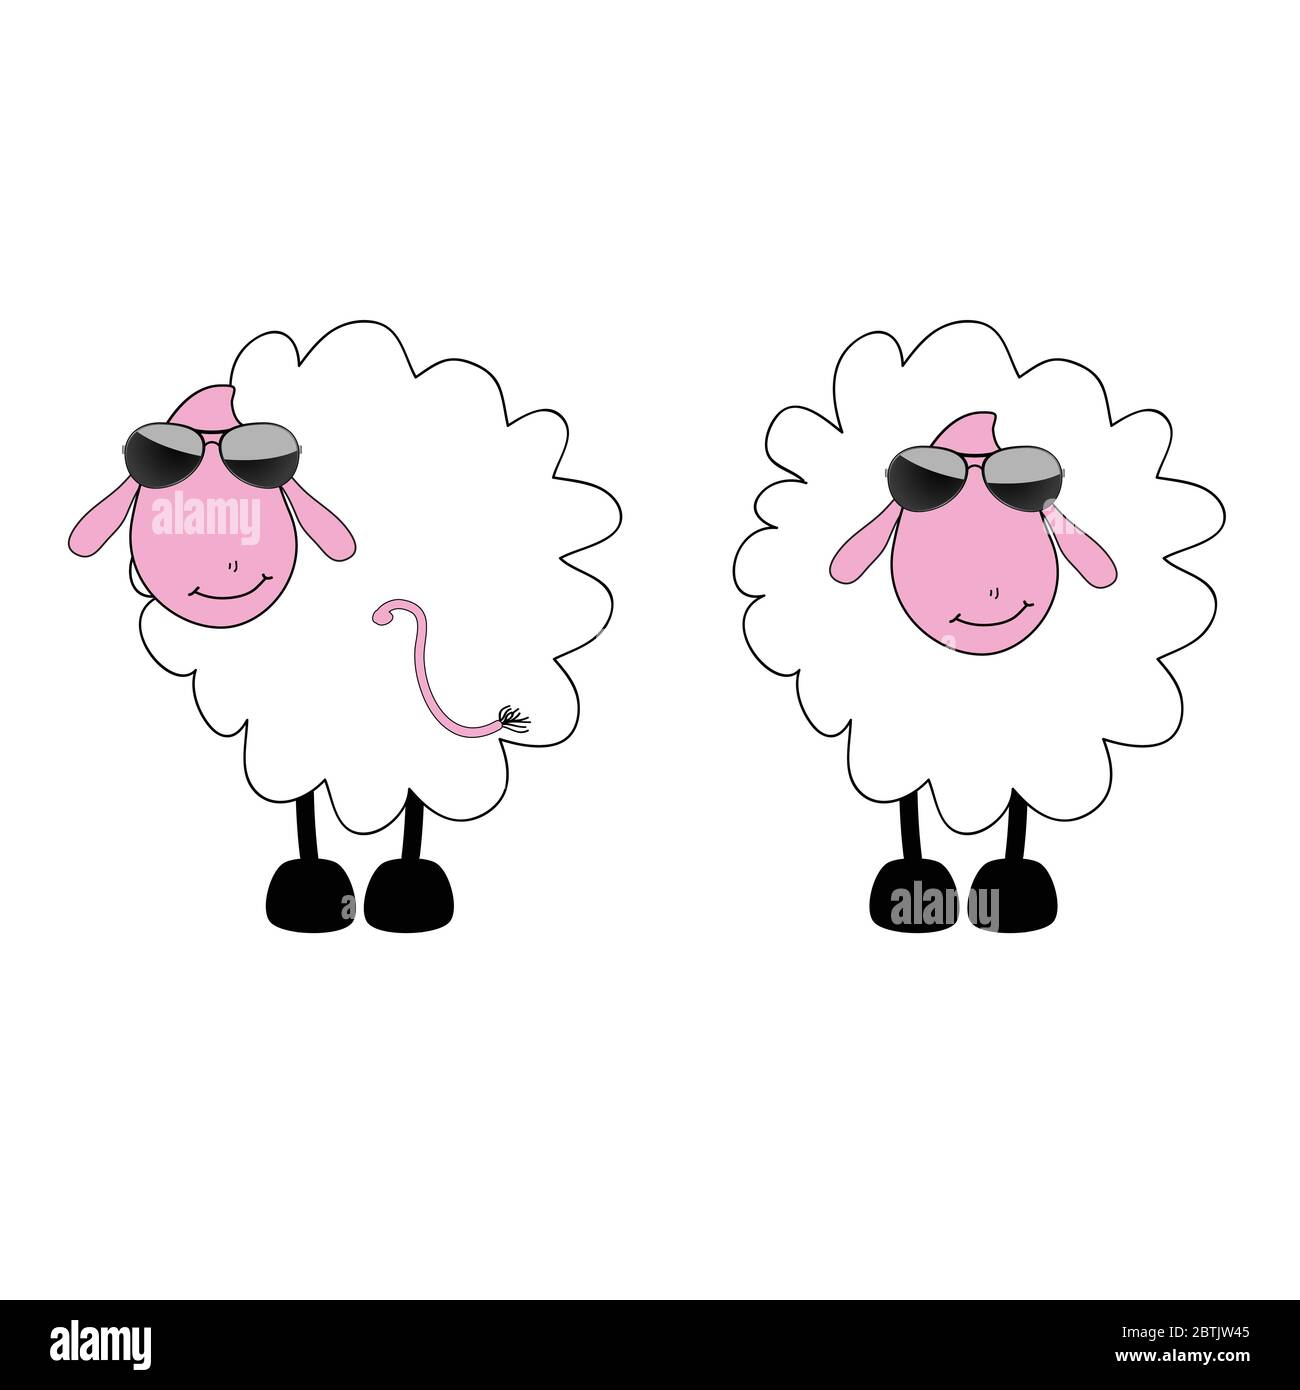 Jeune mouton Banque d'images vectorielles - Page 2 - Alamy